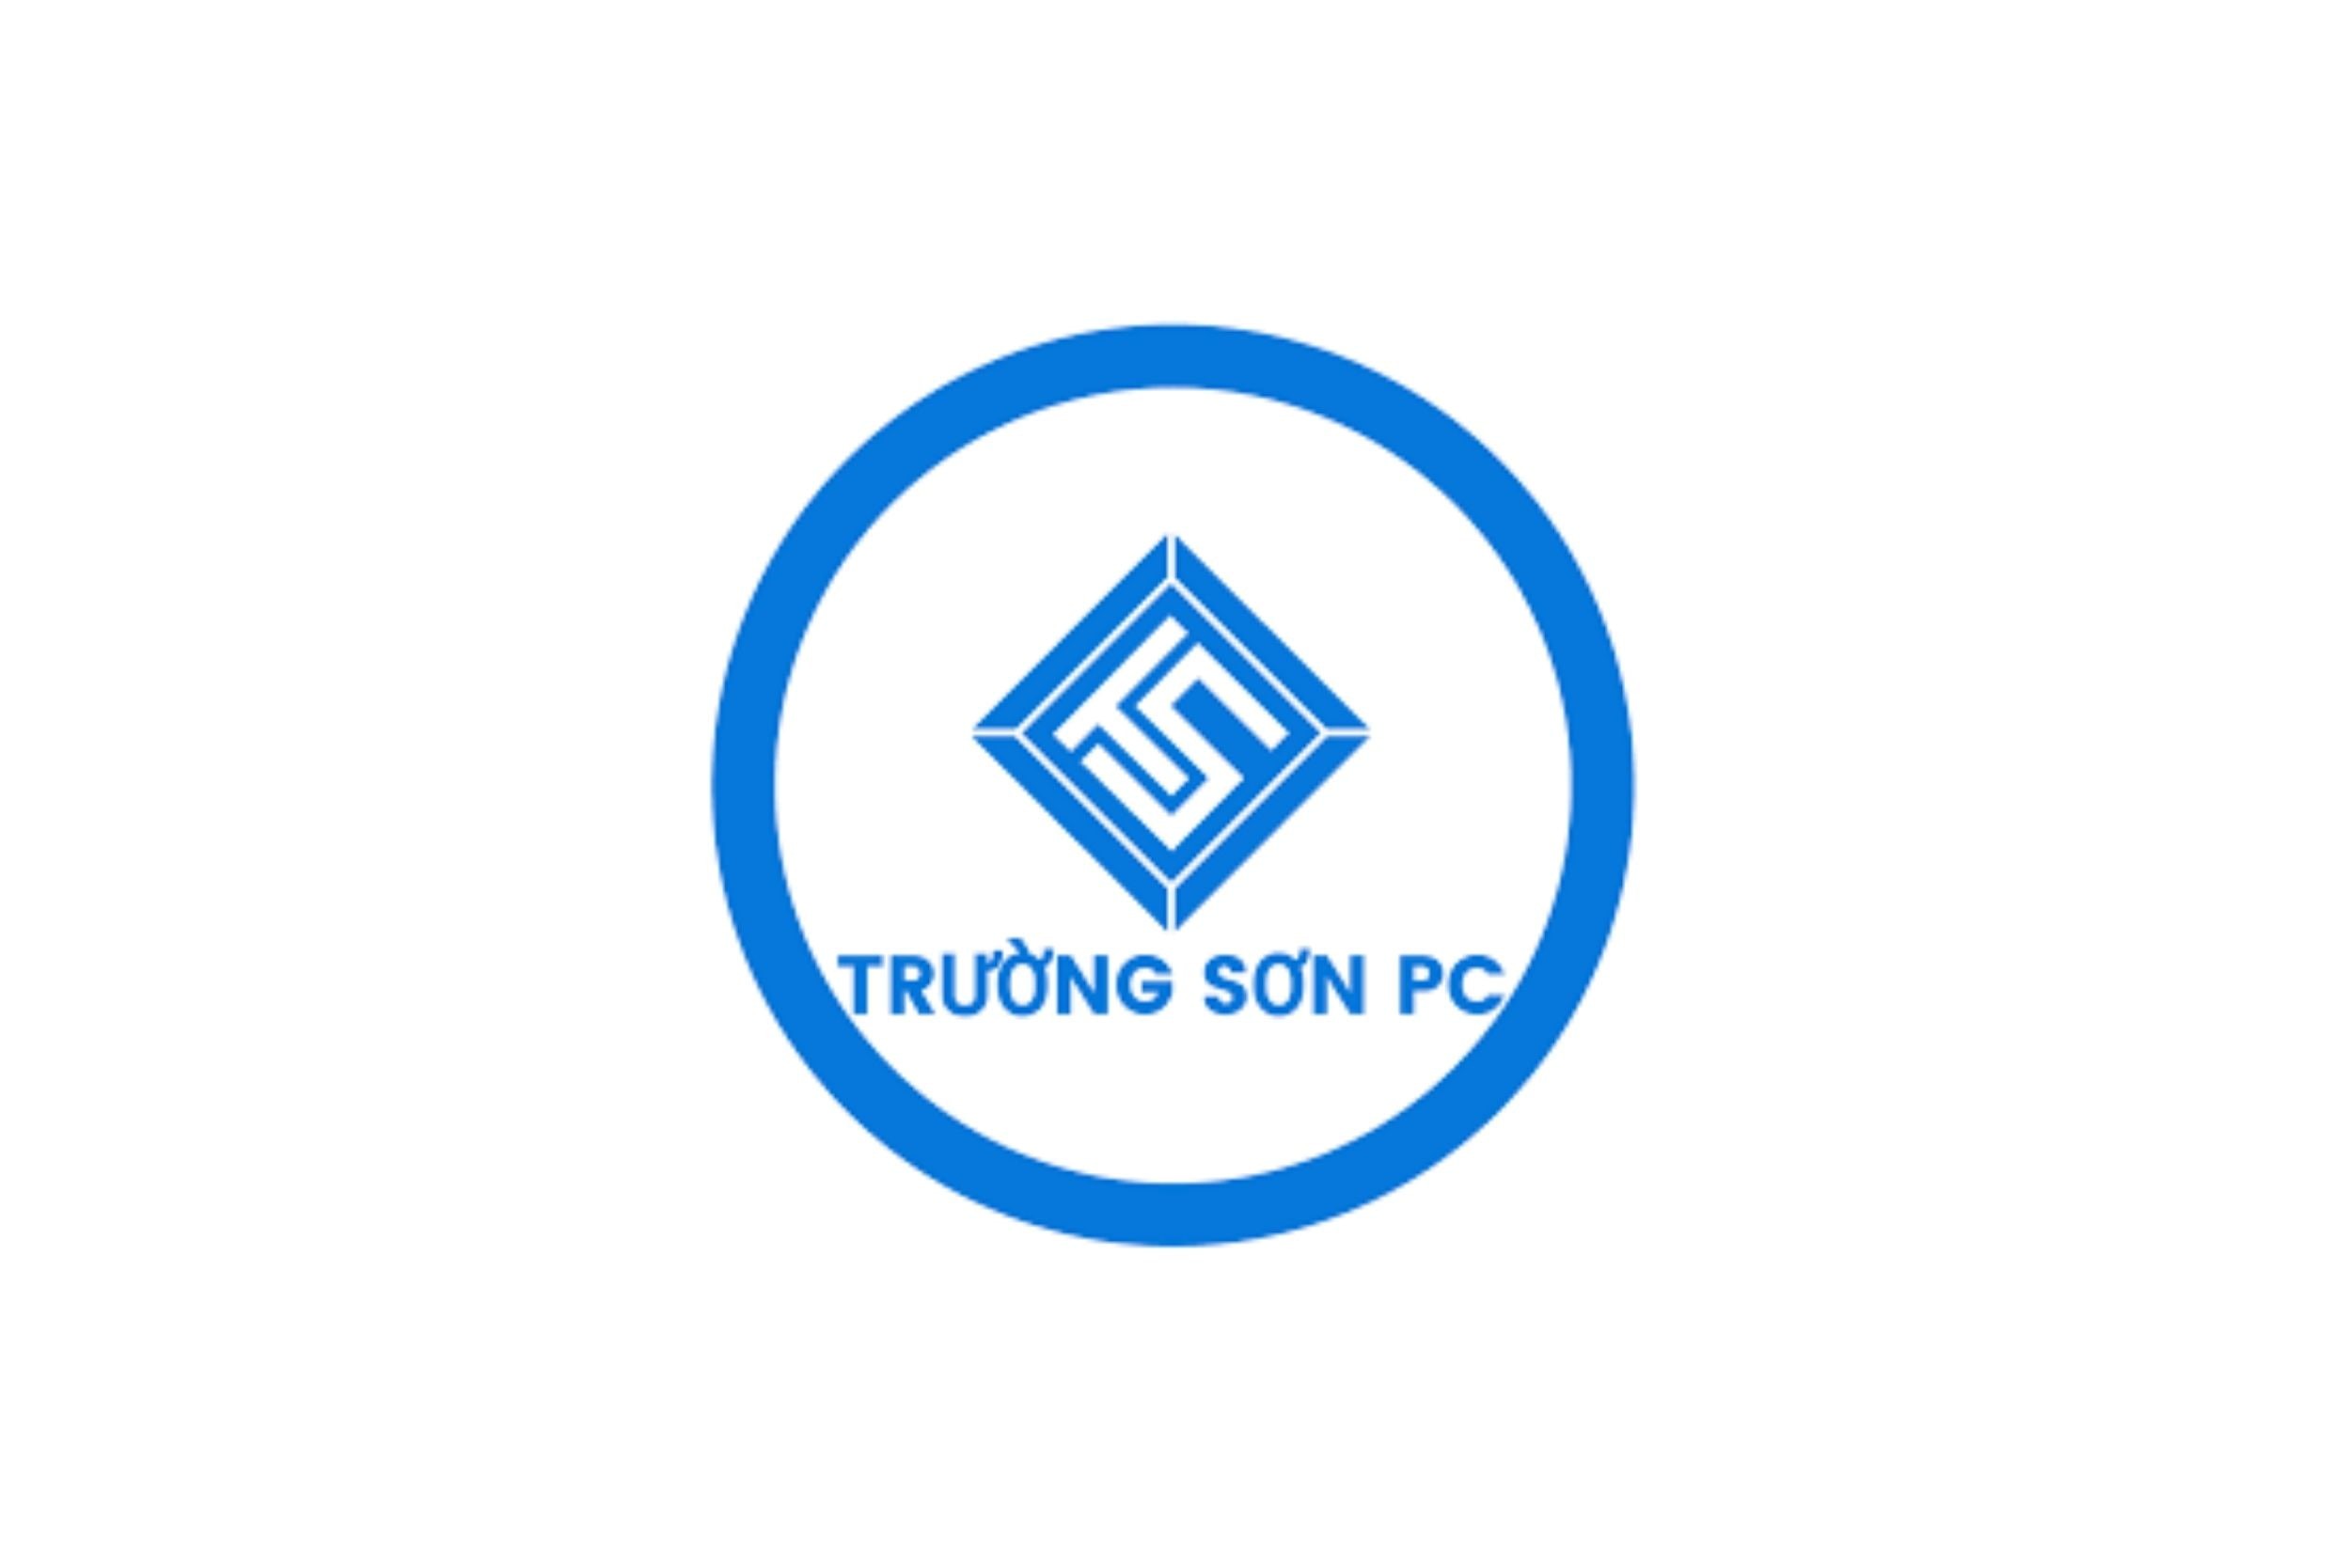 truong-son-pc-logo